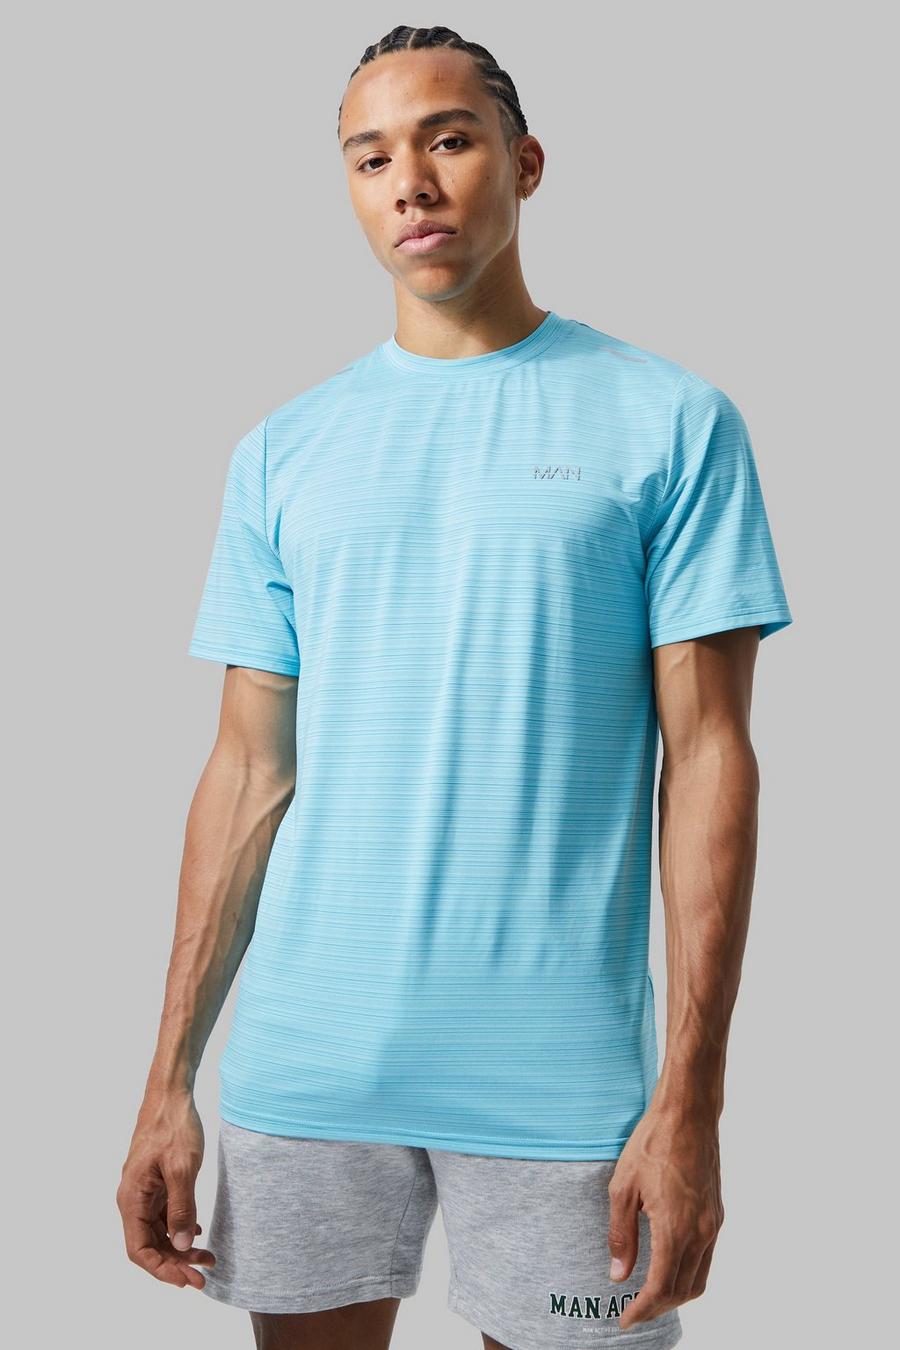 Tall Man Active Lightweight Performance T-Shirt, Light blue image number 1